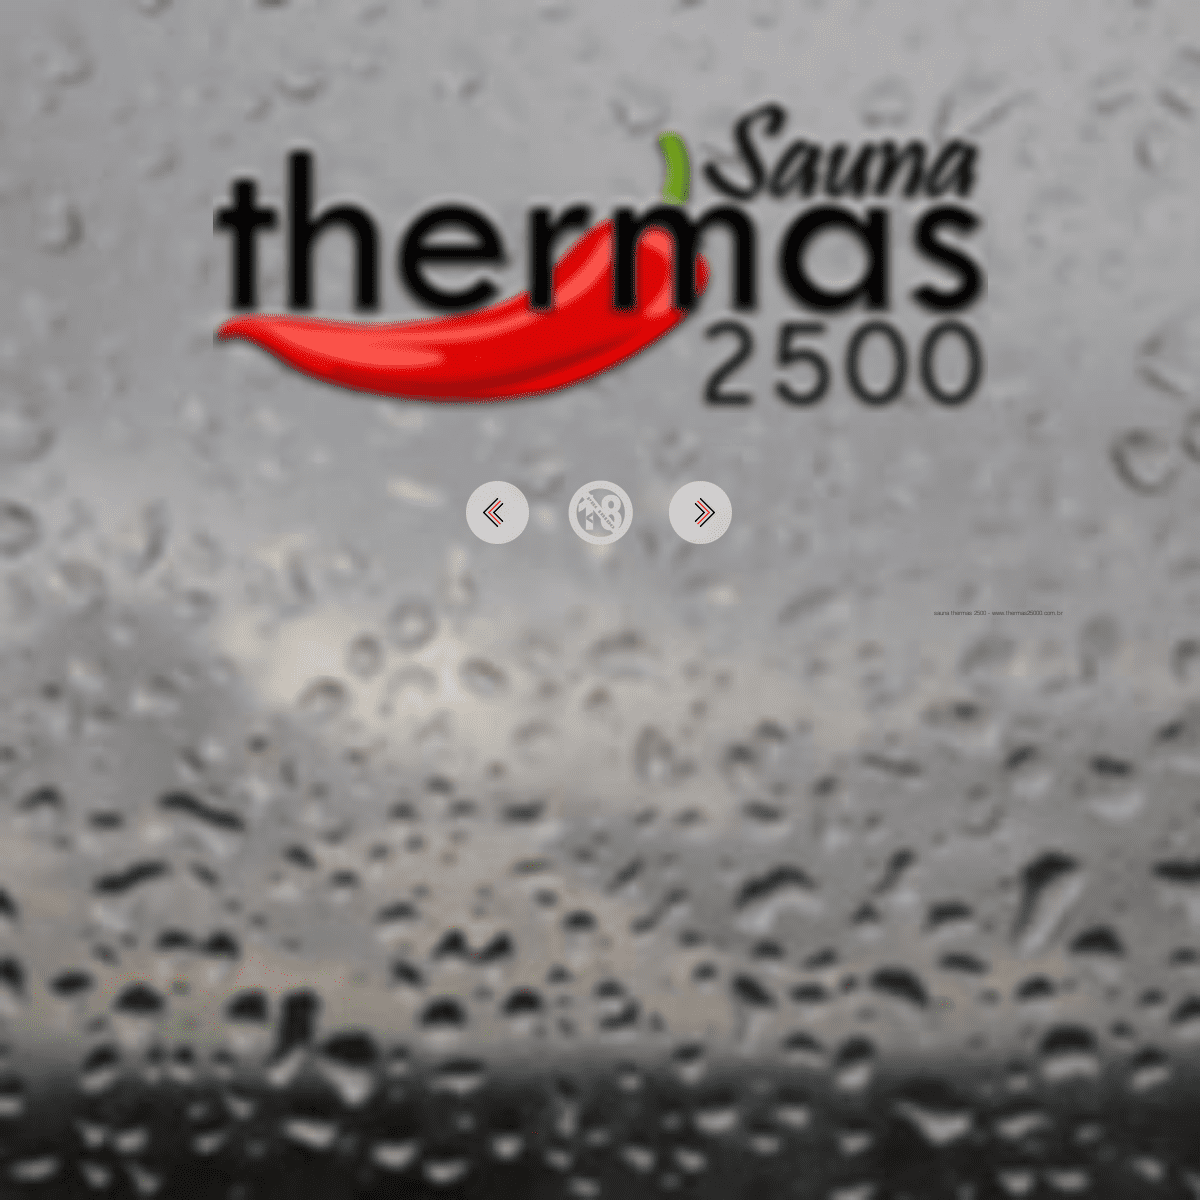 Sauna Thermas 2500 | Sauna Balneário Camboriú